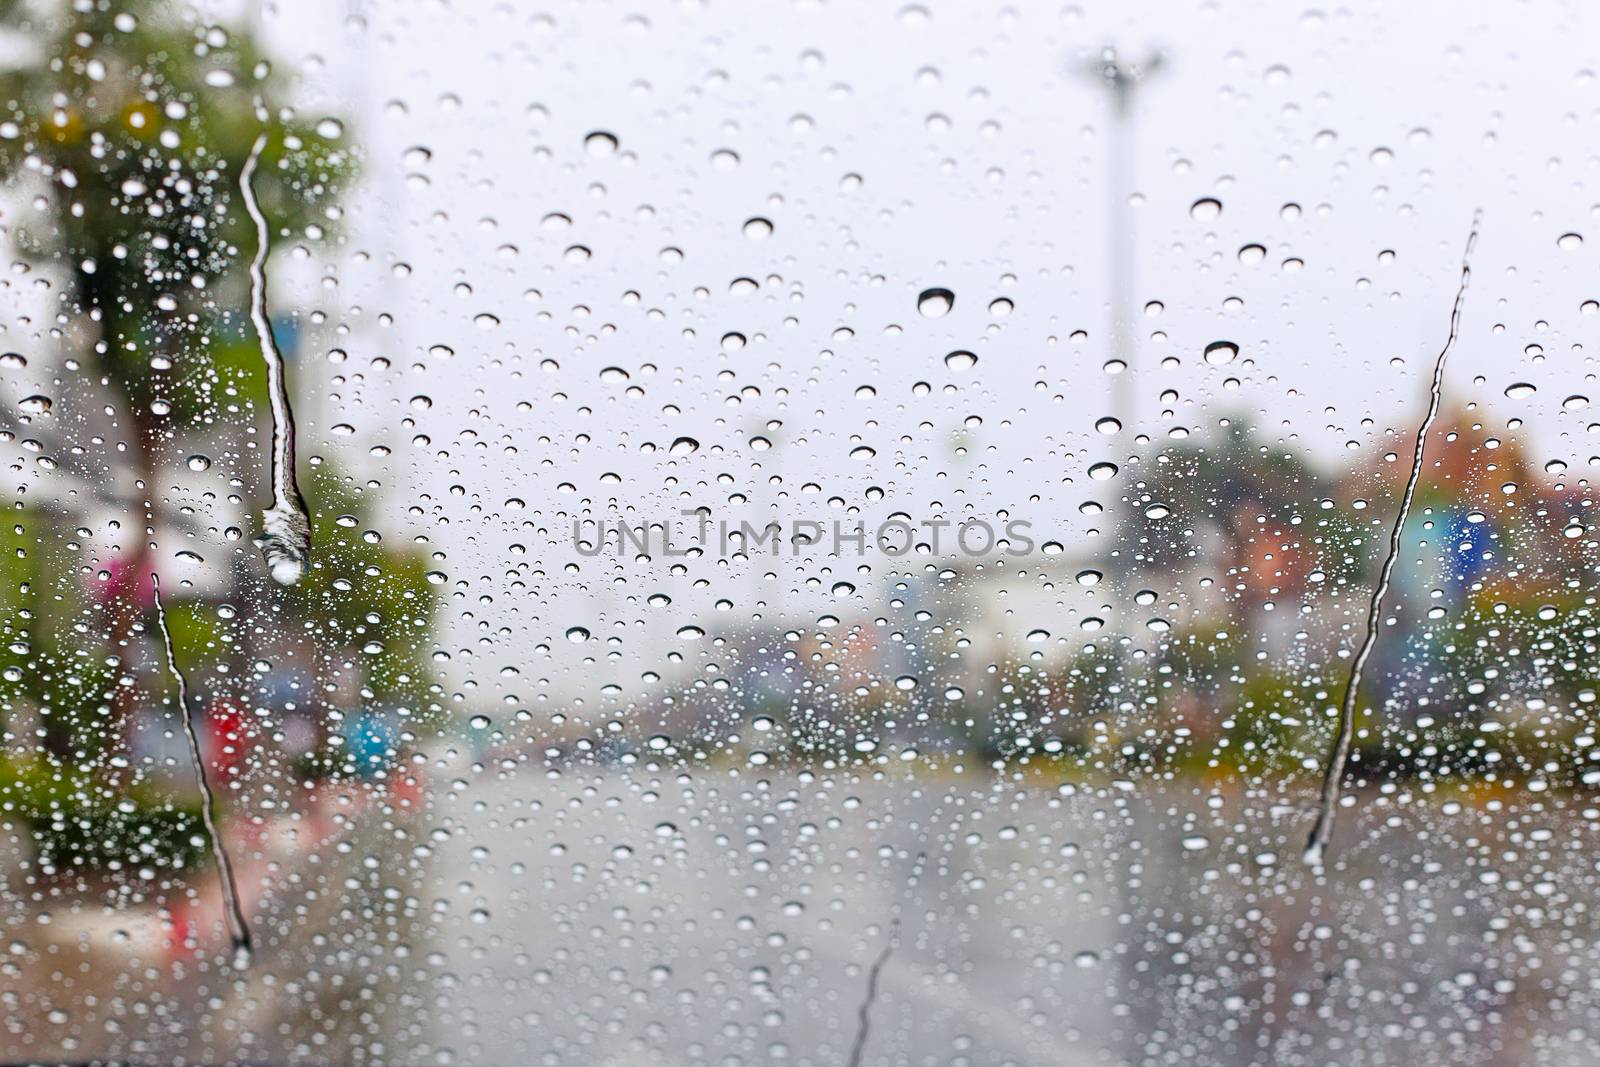 Windshield rain drop on car window. by jayzynism